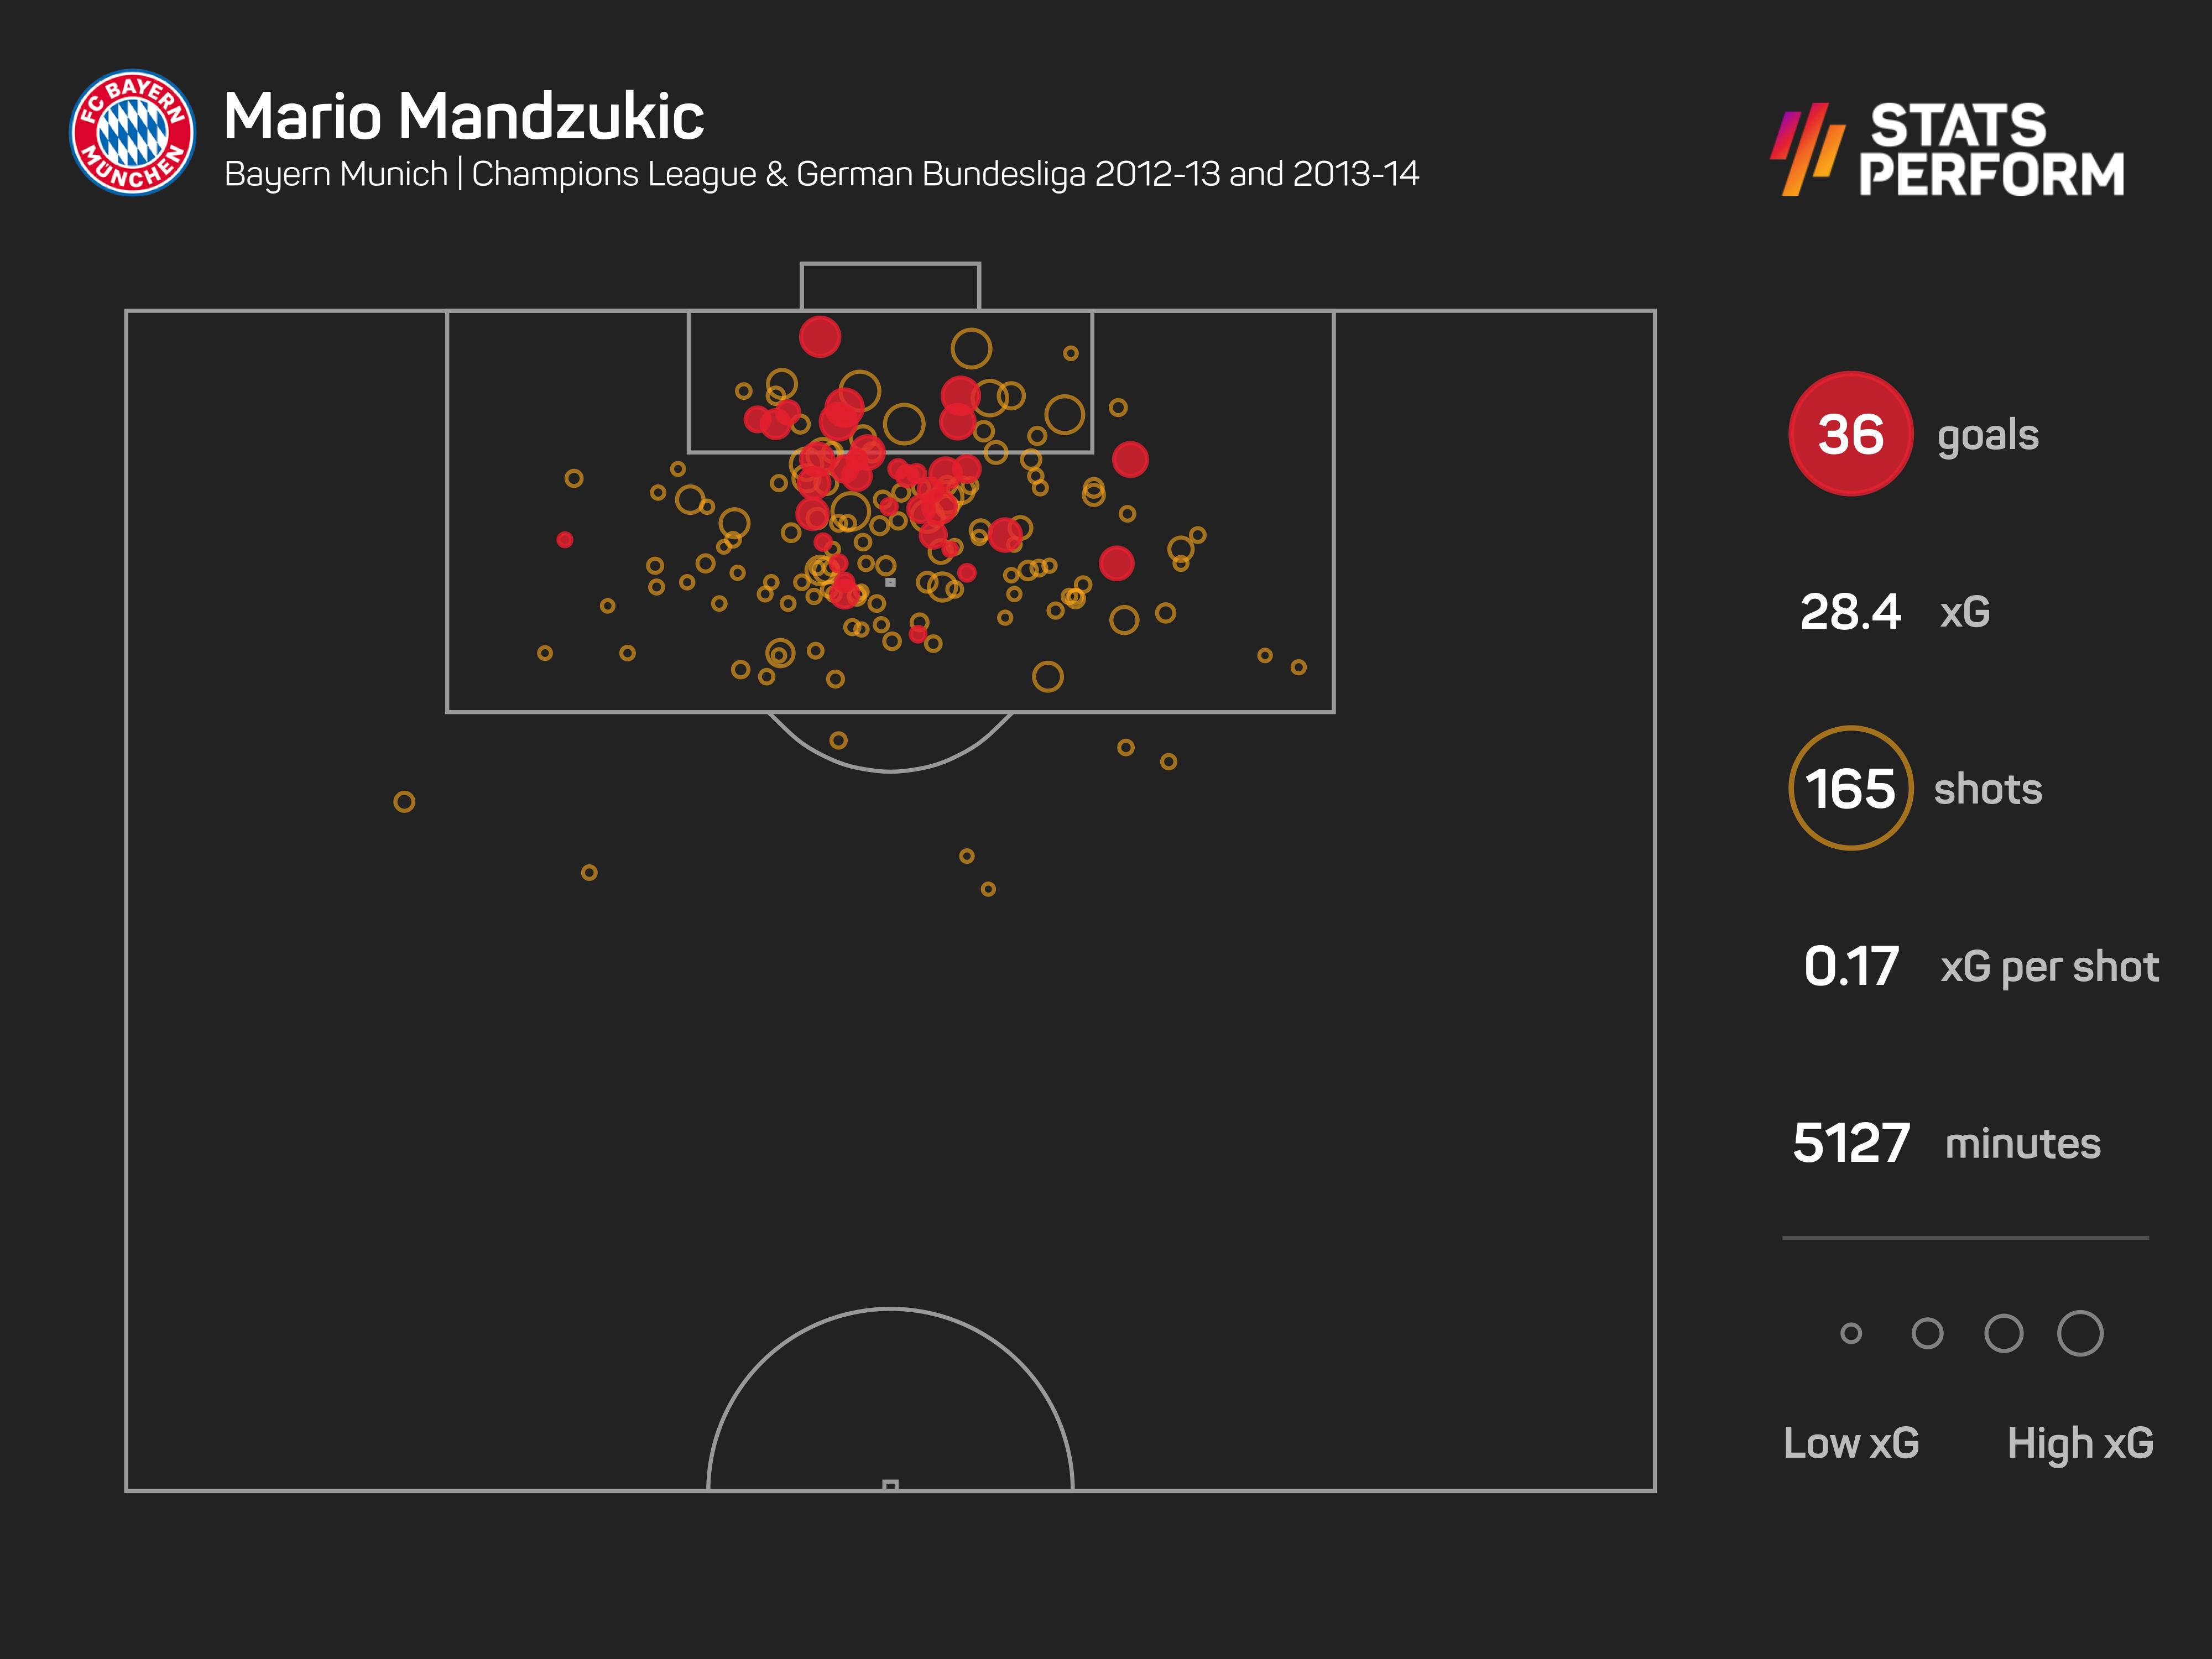 Mario Mandzukic was a key man for Bayern Munich